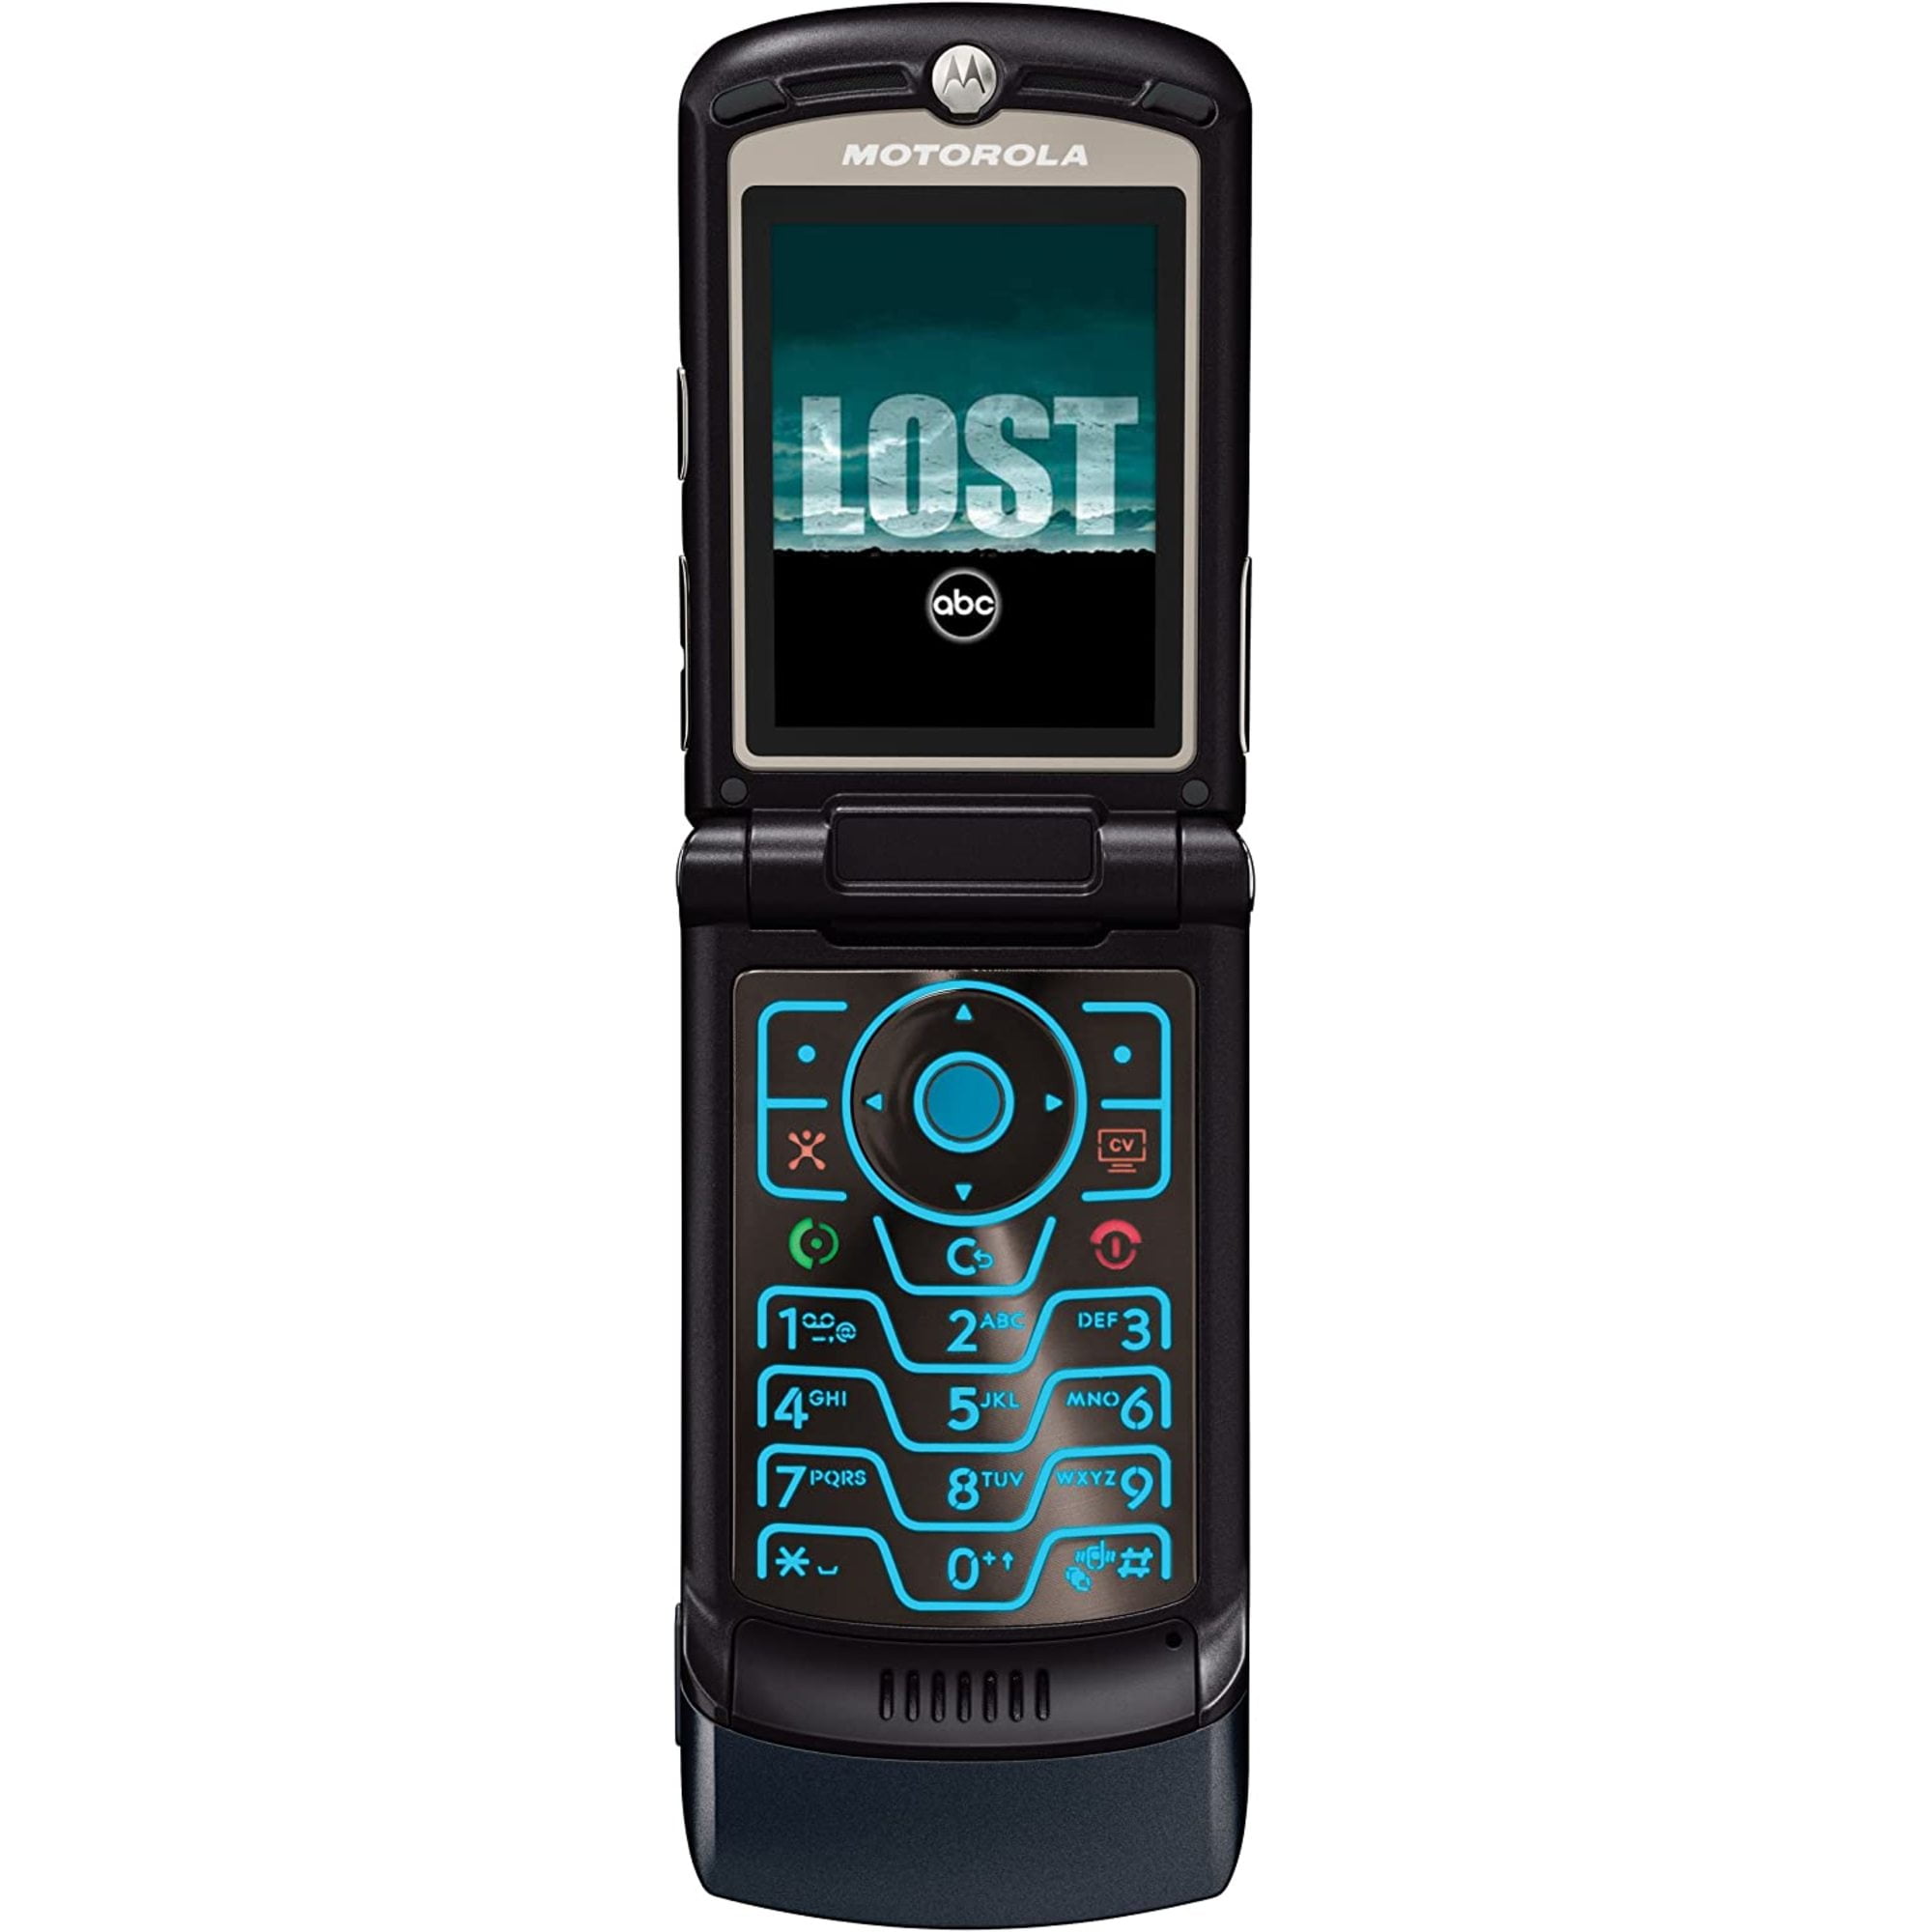 Niet meer geldig lawaai Stijgen Restored Motorola RAZR V3xx Unlocked 3G Cell Phone - Gray (Refurbished) -  Walmart.com